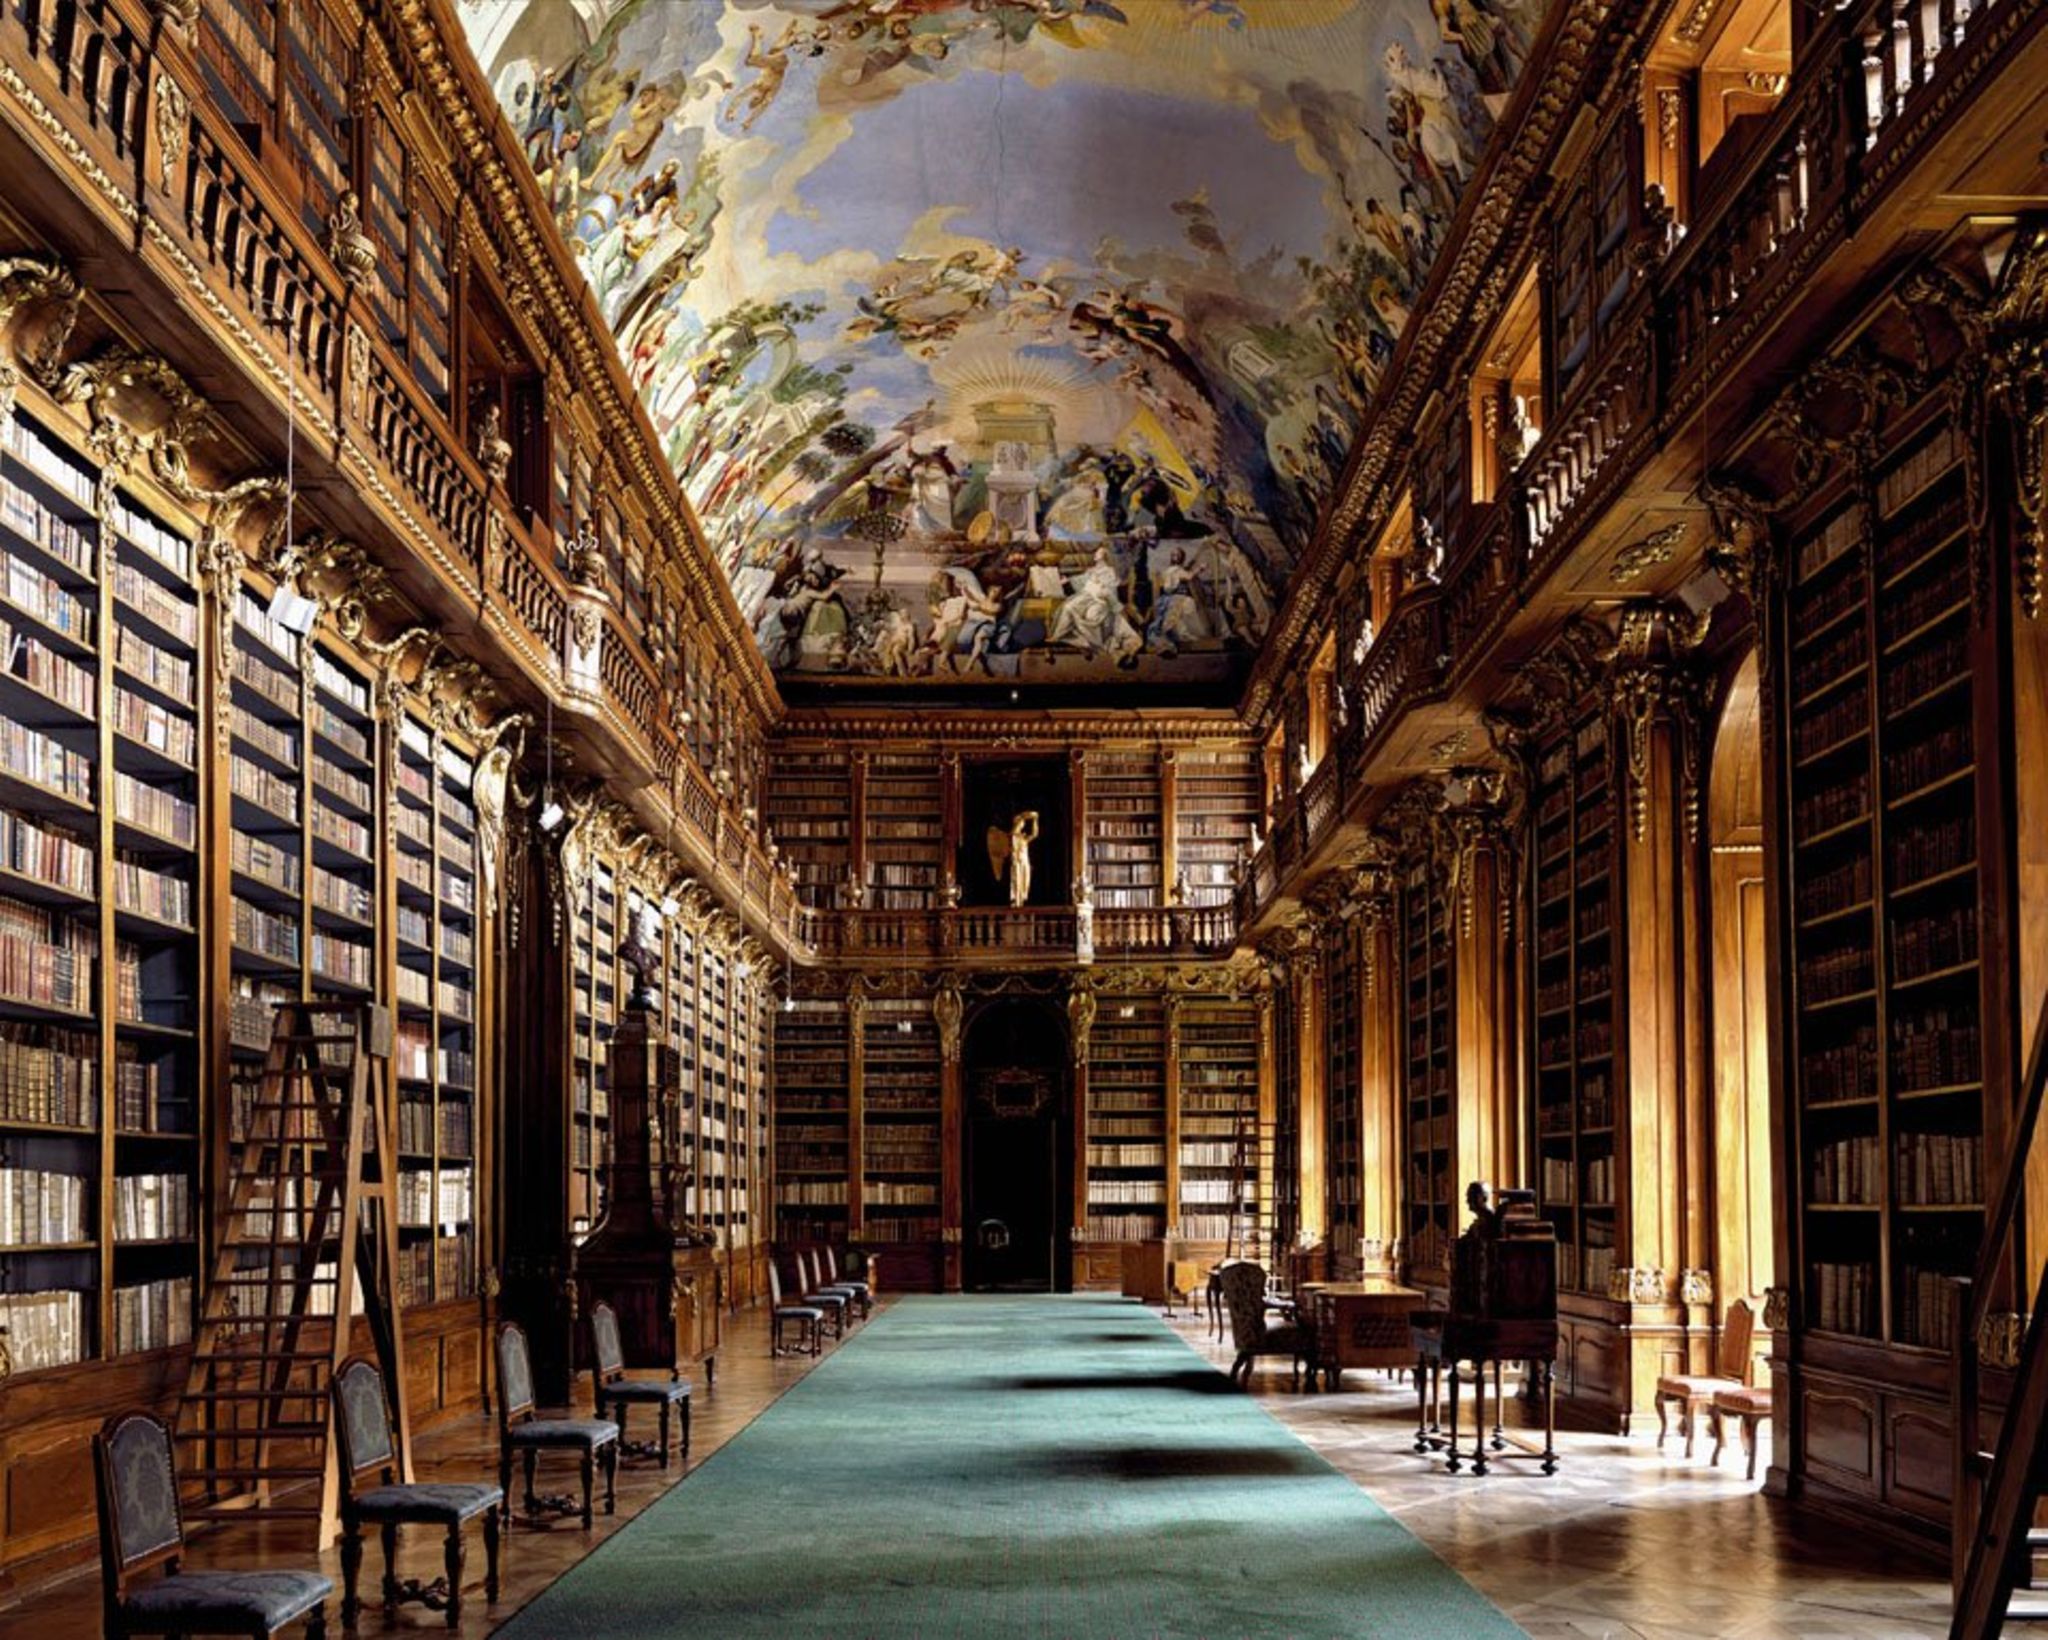 Picture library. Библиотека Джироламини, Неаполь. Библиотека Джироламини Италия. Библиотека Кремсмюнстерского аббатства, Австрия. Библиотека монастыря Санкт-Флориан.